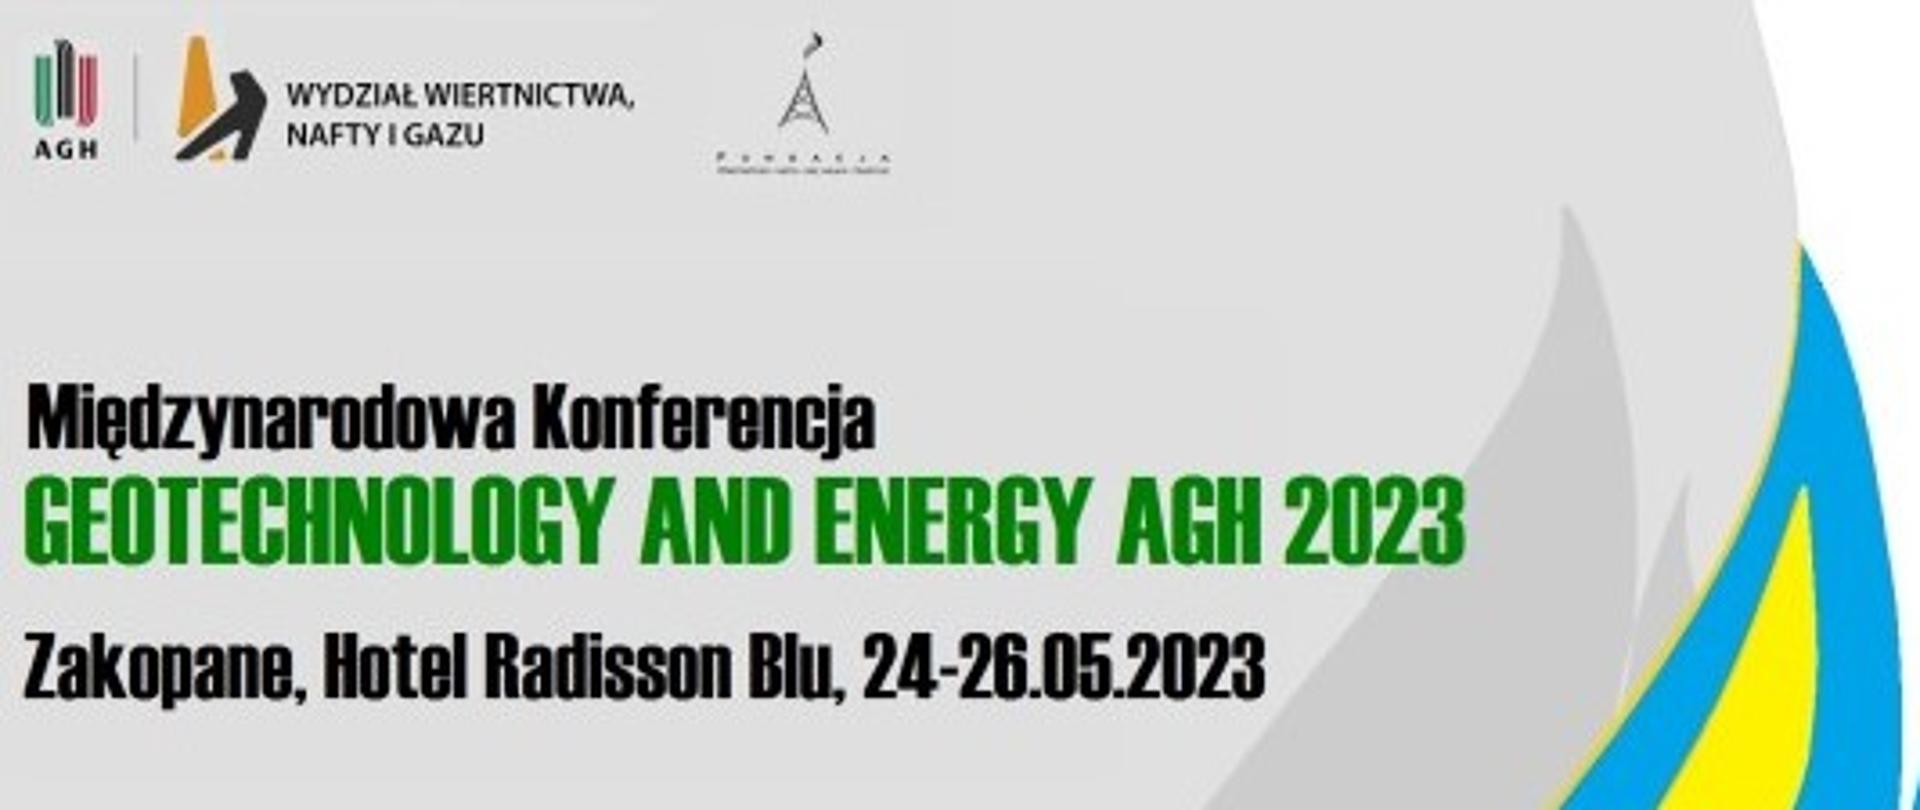 Grafika informacyjna o Międzynarodowej Konferencji Geotechnology and Energy AGH 2023